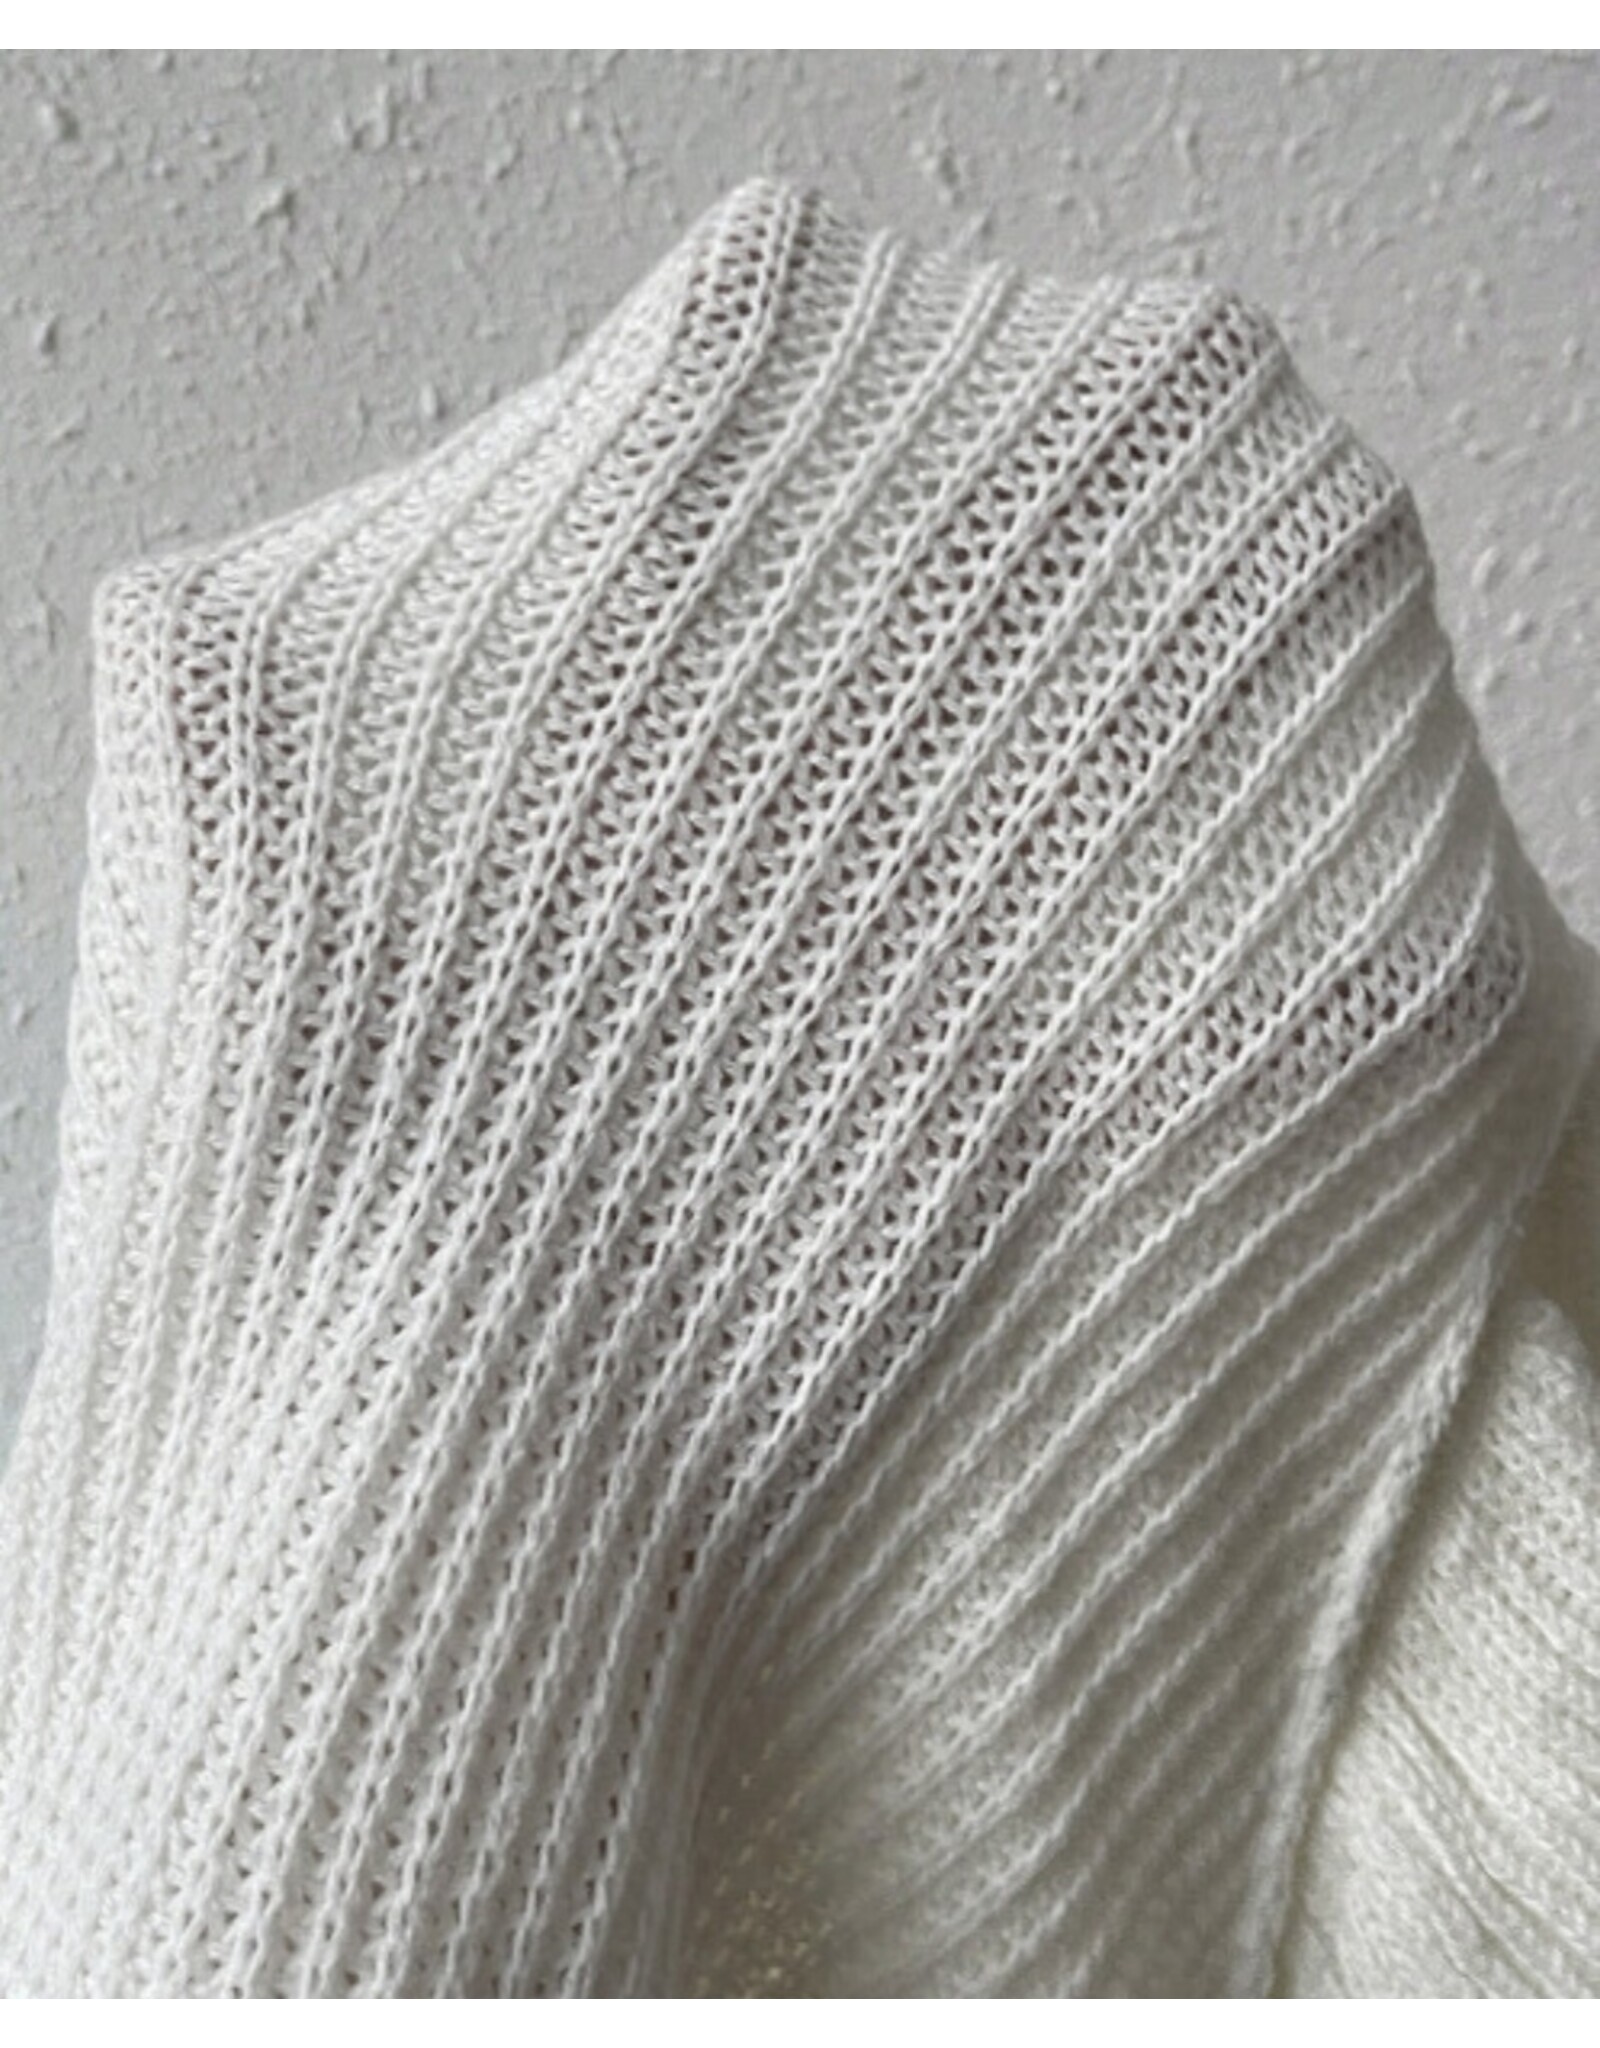 LATA White Turtle Neck Short Sleeve Ruffled Sweater